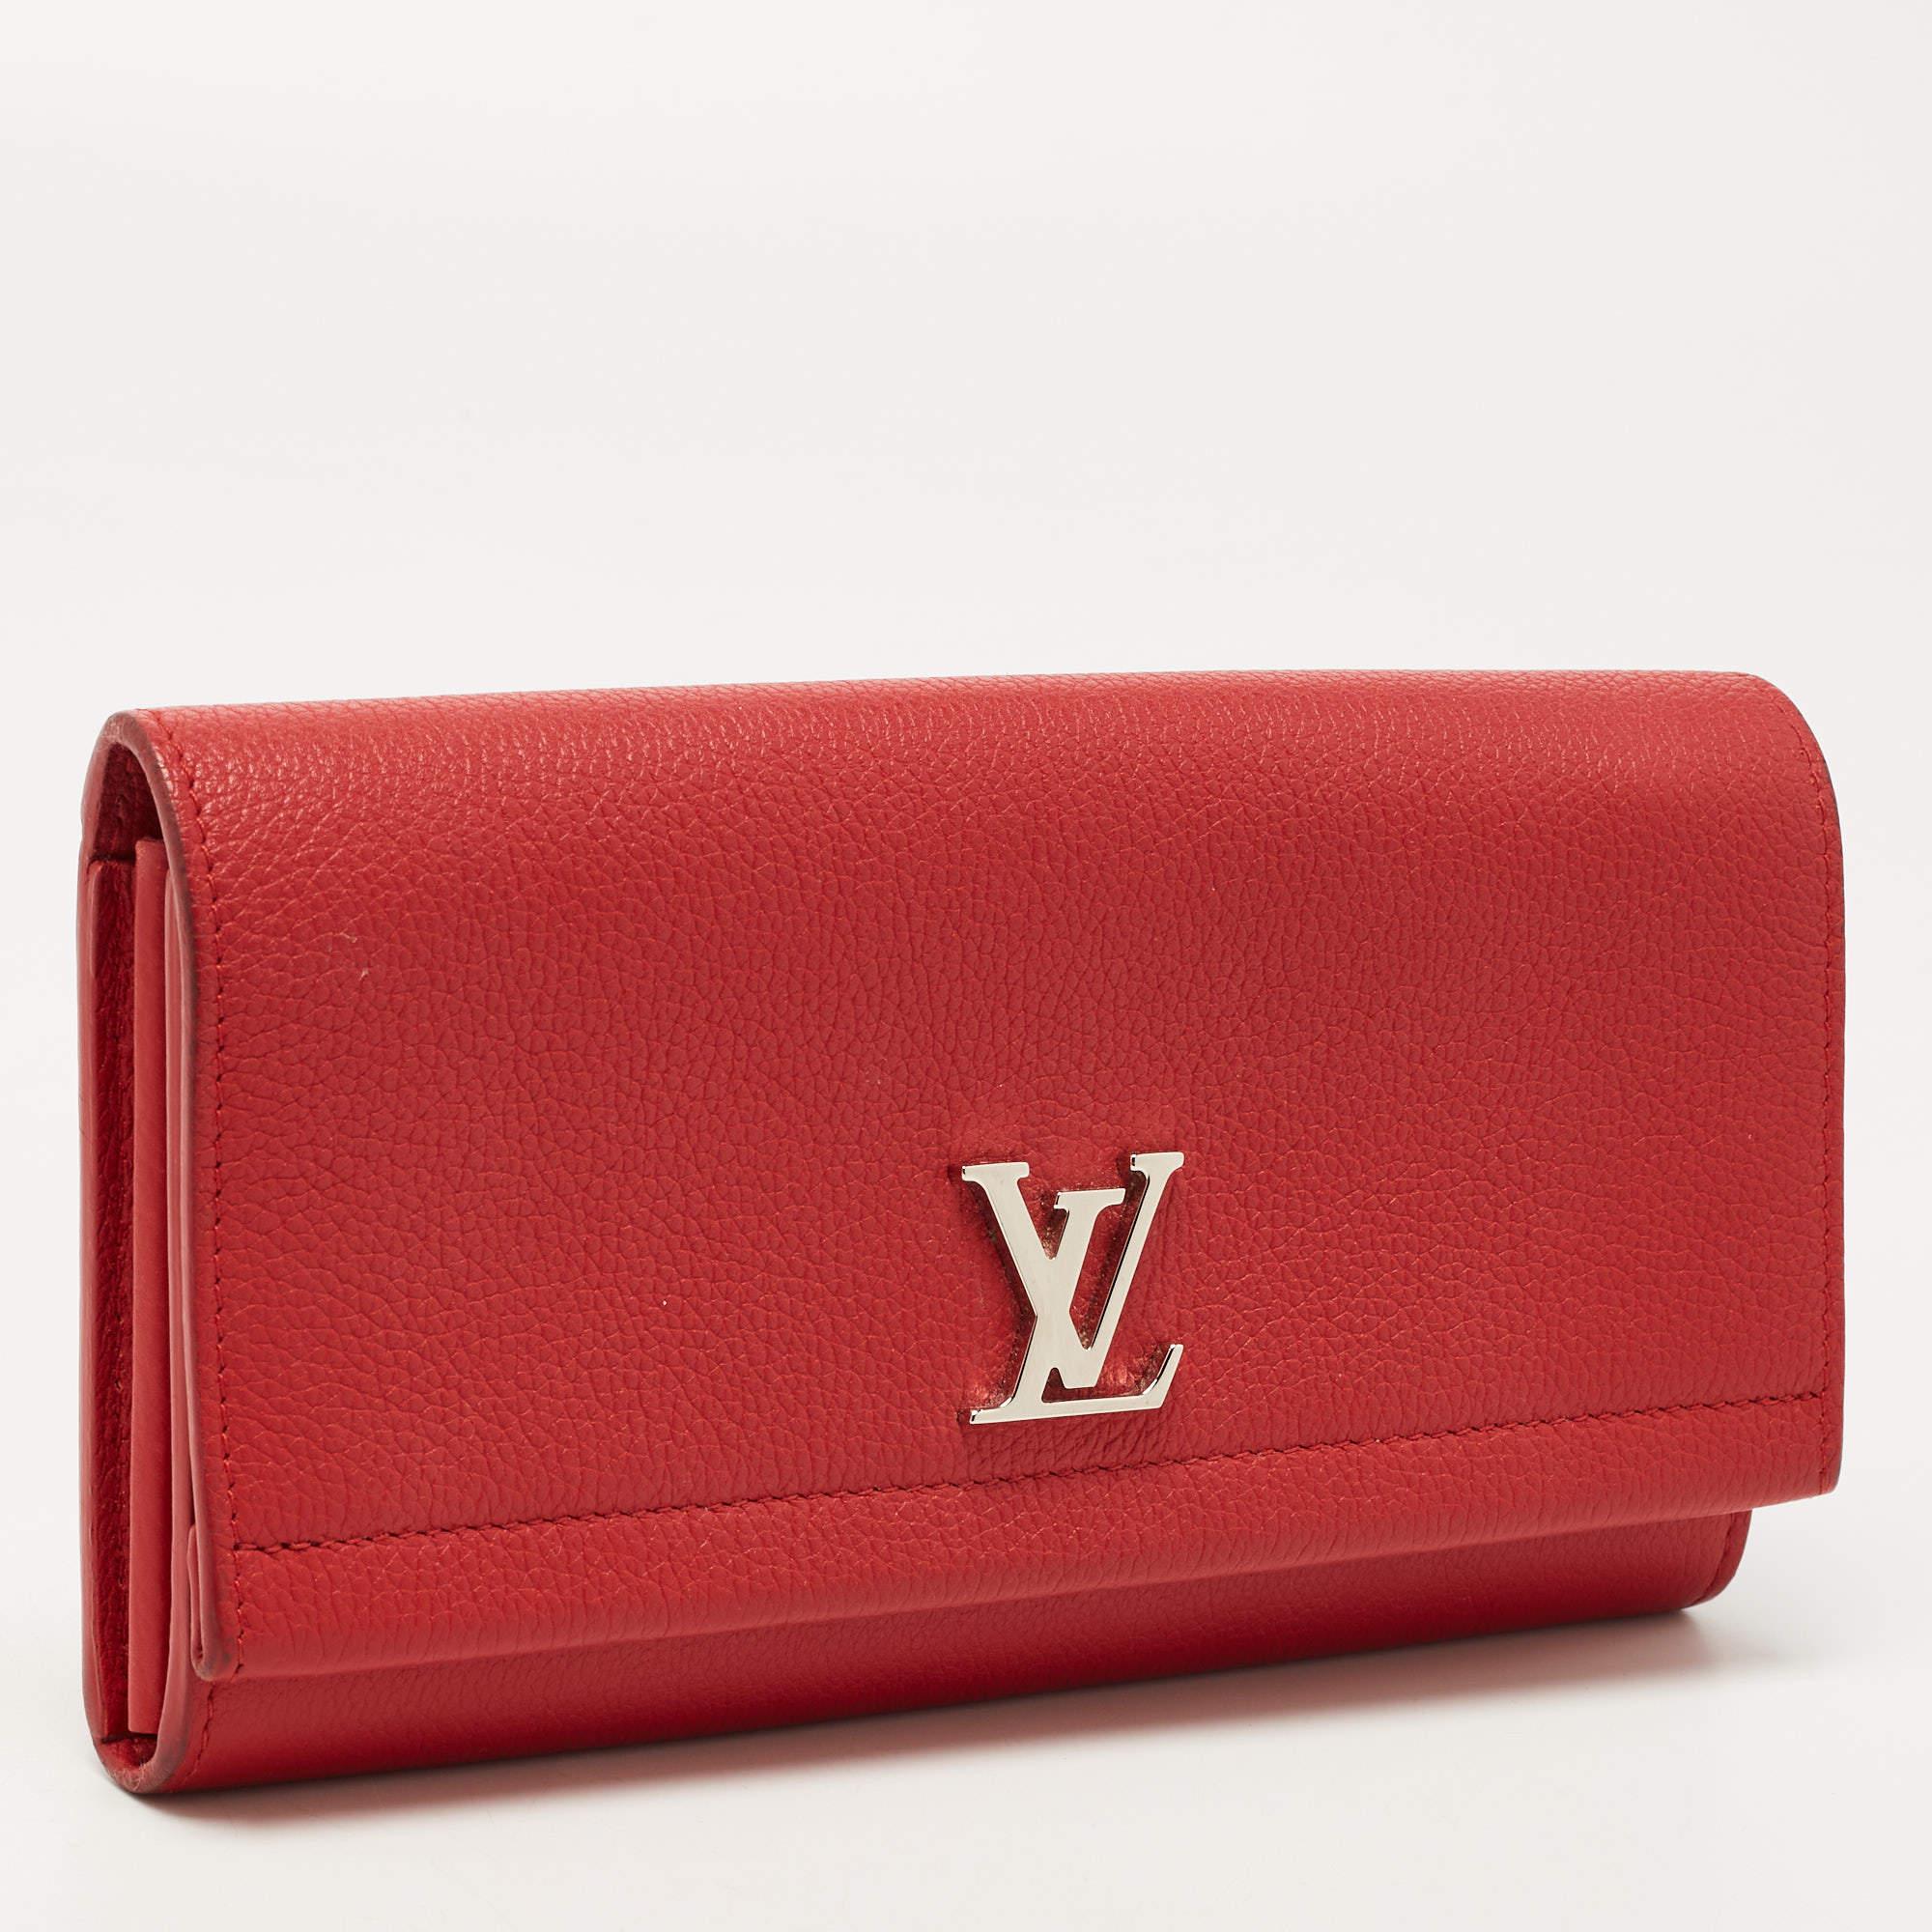 Dieses luxuriöse Lock Me ll Portemonnaie von Louis Vuitton ist eine wahre Freude für jeden, der es bei sich trägt. Die Klappe ist aus rotem Leder gefertigt und mit dem LV-Logo aus silberfarbenem Metall versehen. Sie lässt sich öffnen und gibt den